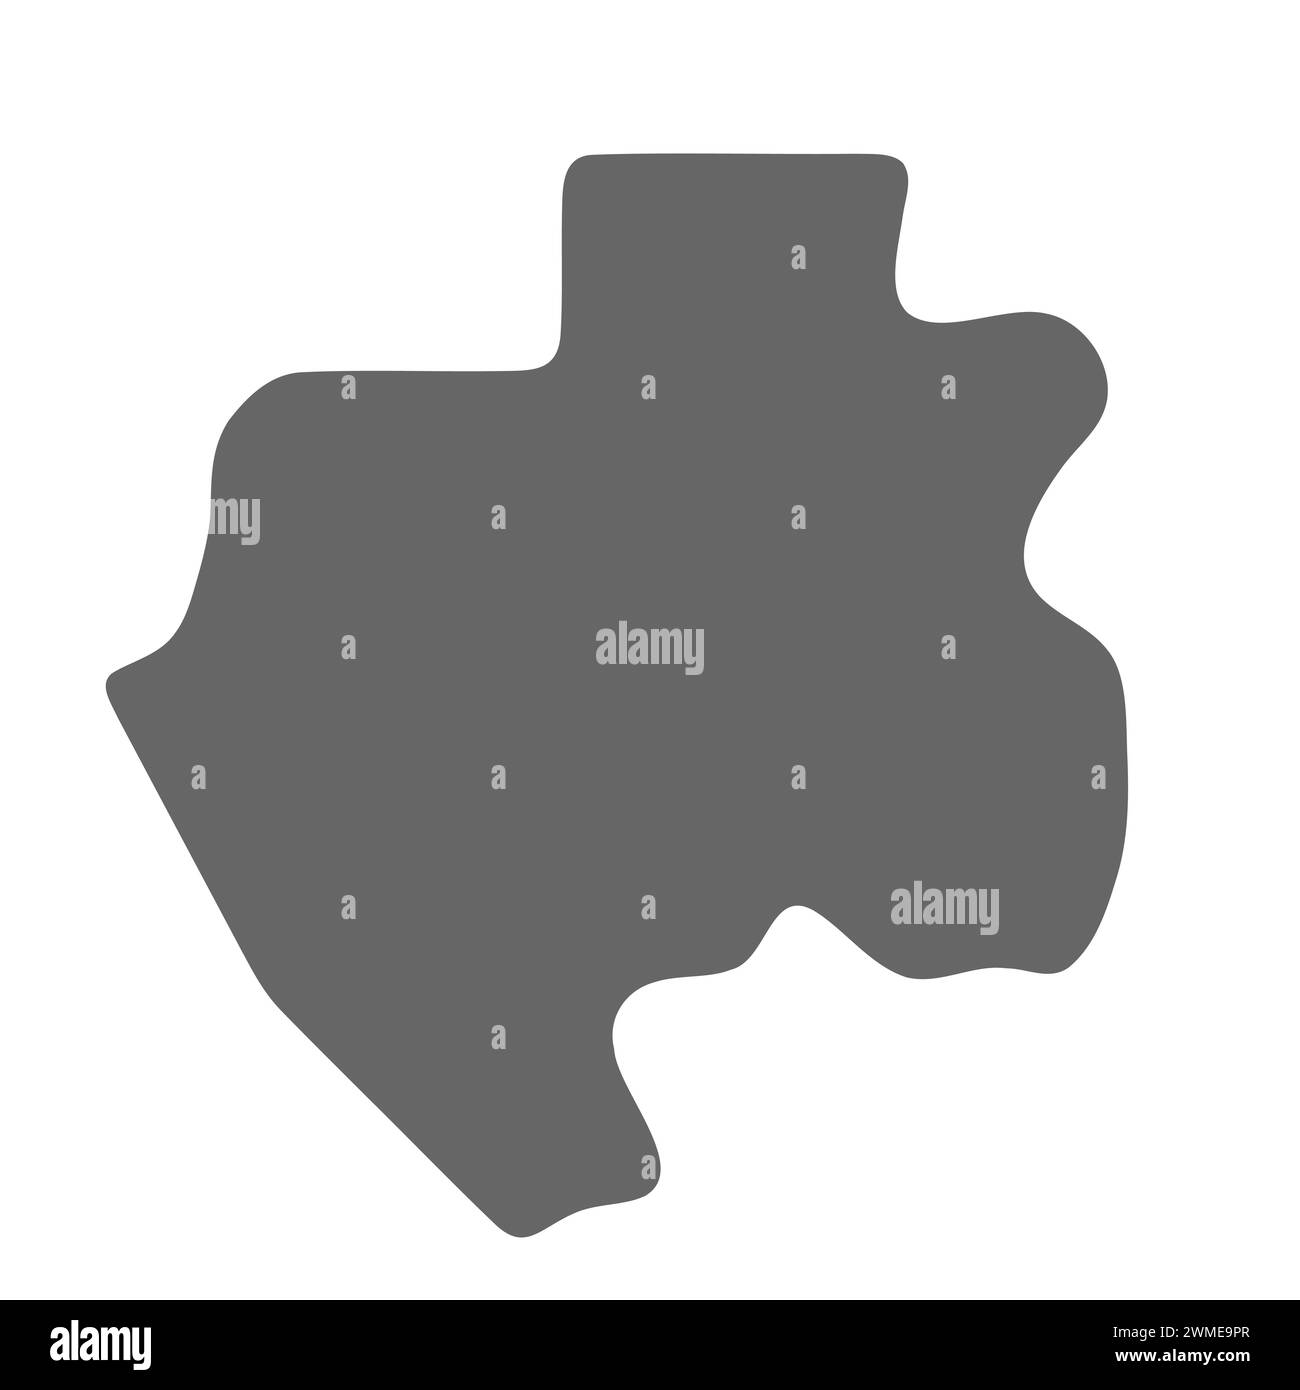 Vereinfachte Karte für Gabun. Graue, elegante, glatte Karte. Vektorsymbole isoliert auf weißem Hintergrund. Stock Vektor